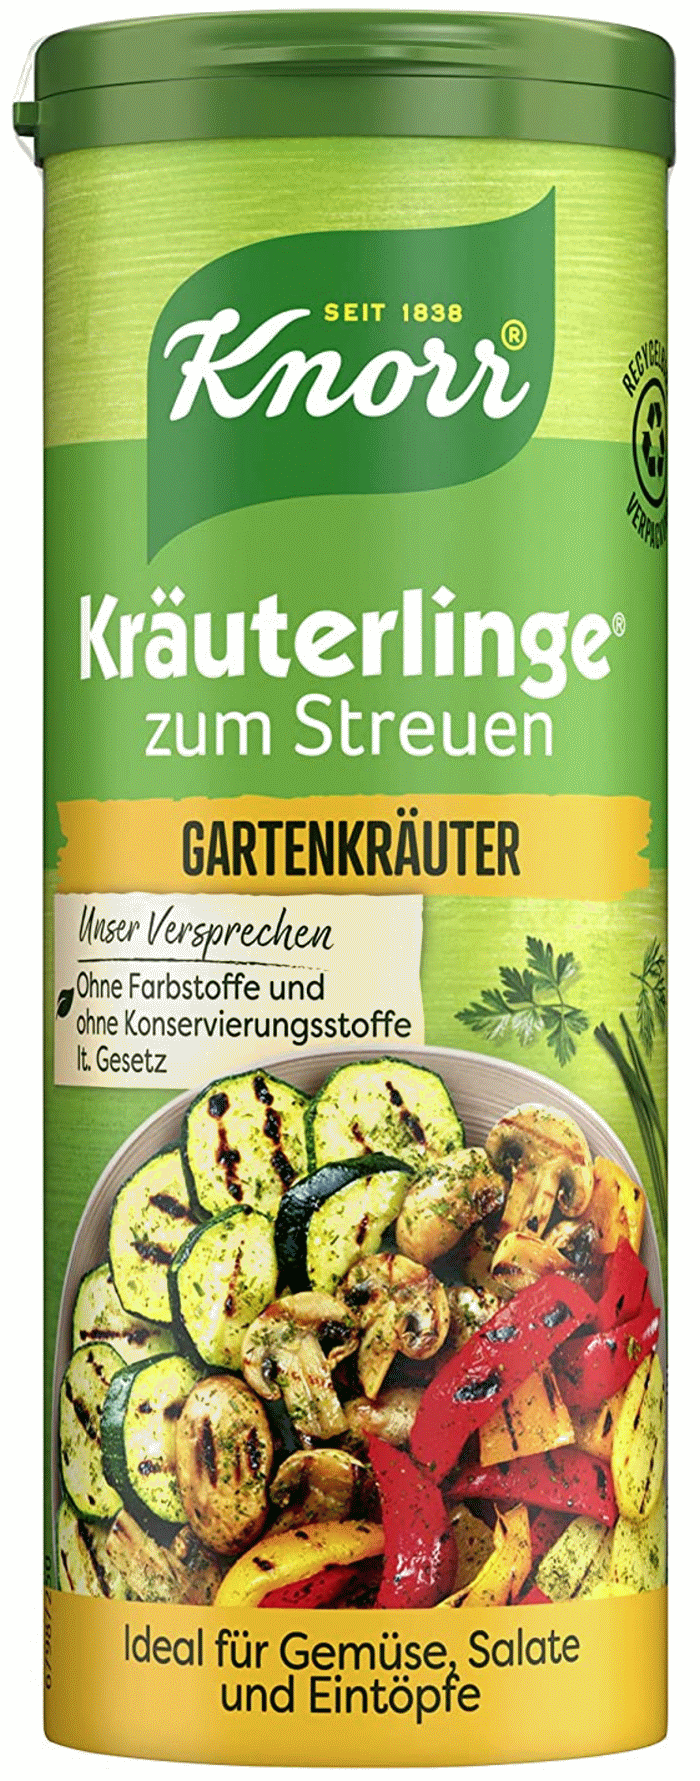 Knorr Kräuterlinge Gartenkräuter 60g / 2.1oz